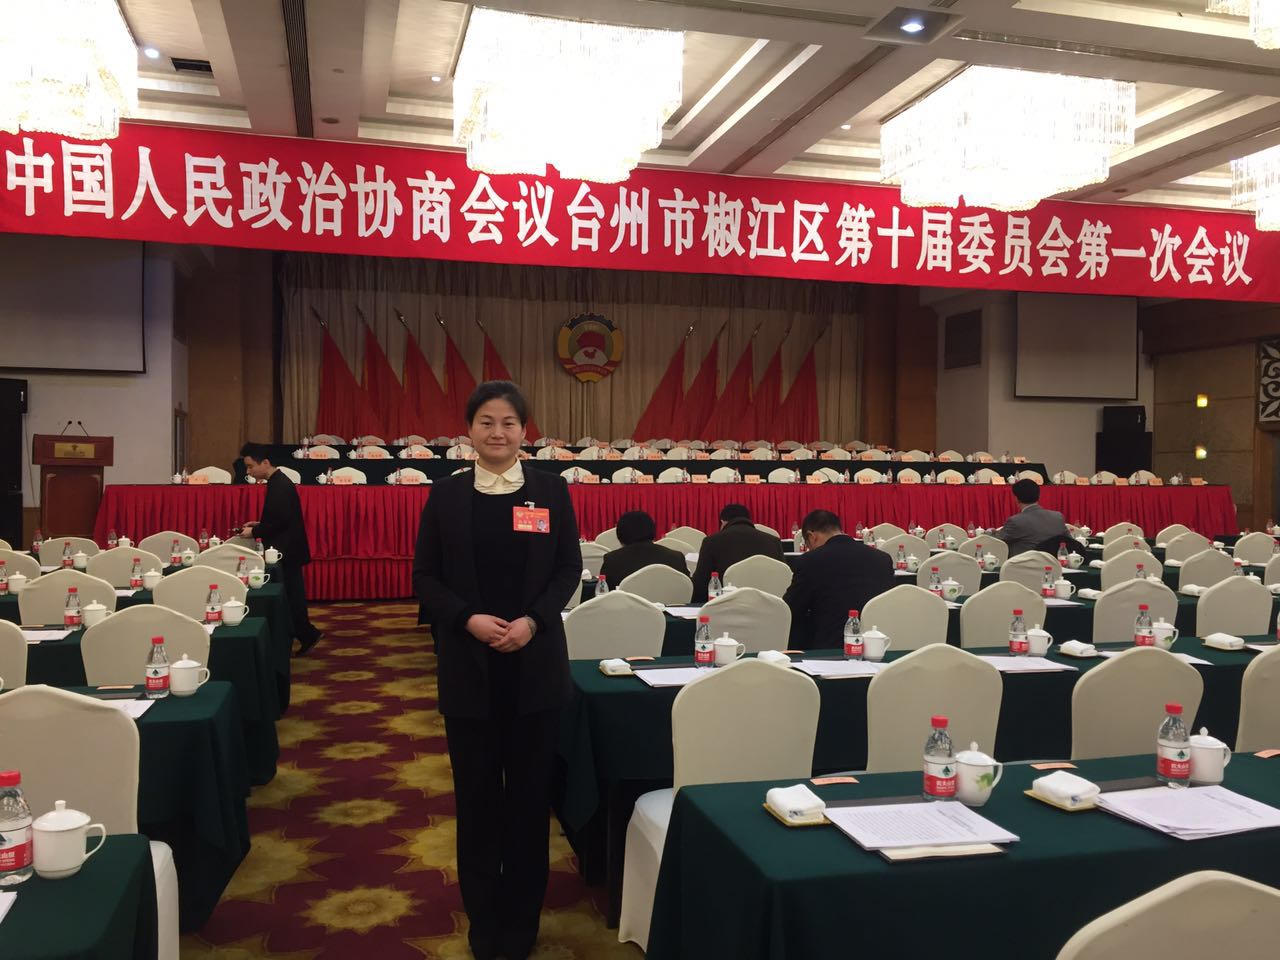 本所王晓律师当选为台州市椒江区第十届政协委员会常务委员